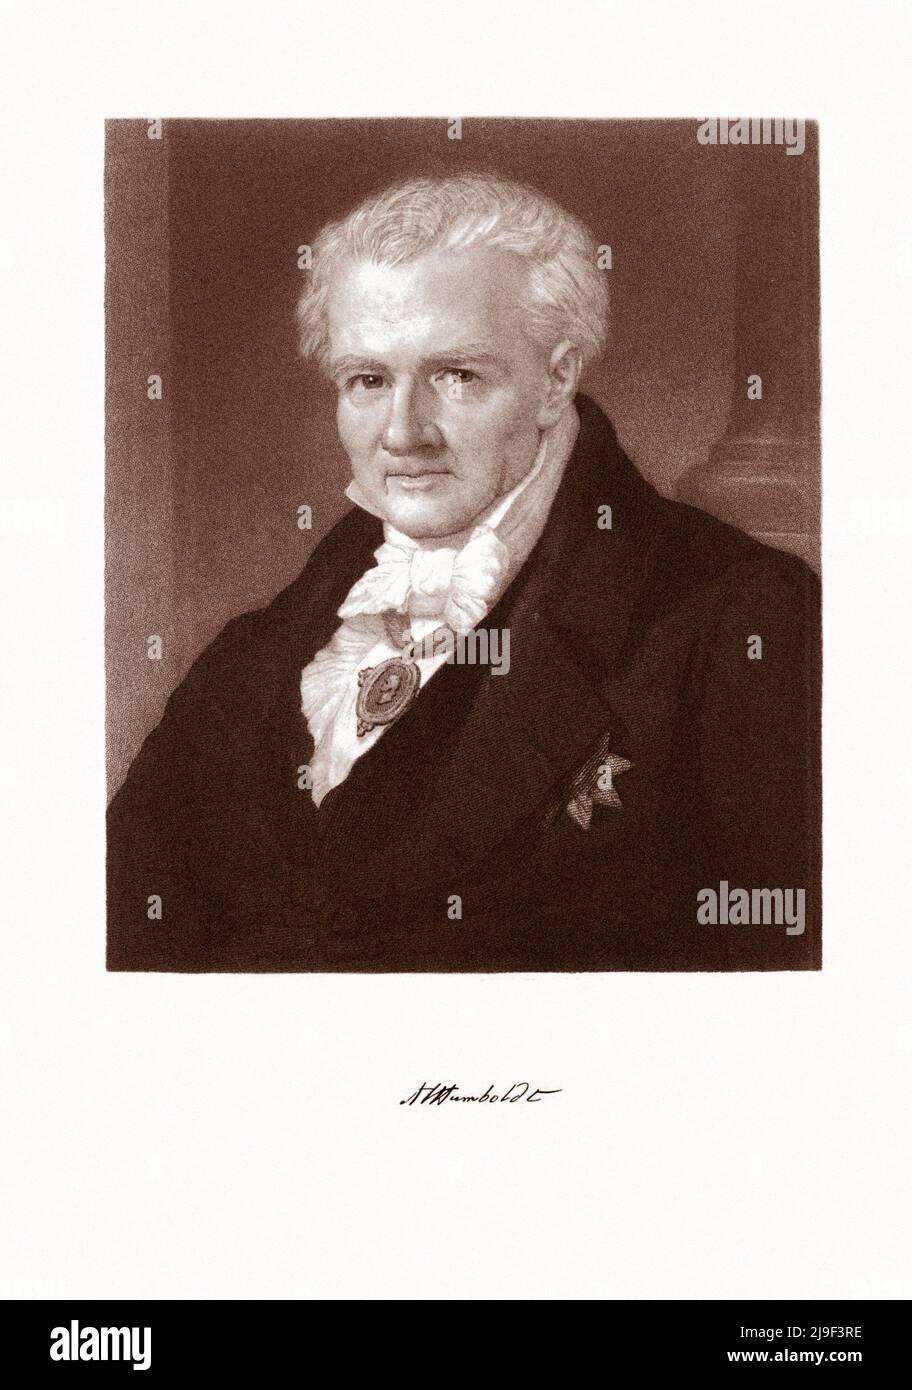 Retrato de Alexander von Humboldt. Grabado por John Sartain, 1808-1897. Después de Hildebrandt. Friedrich Wilhelm Heinrich Alexander von Humboldt (1769– Foto de stock